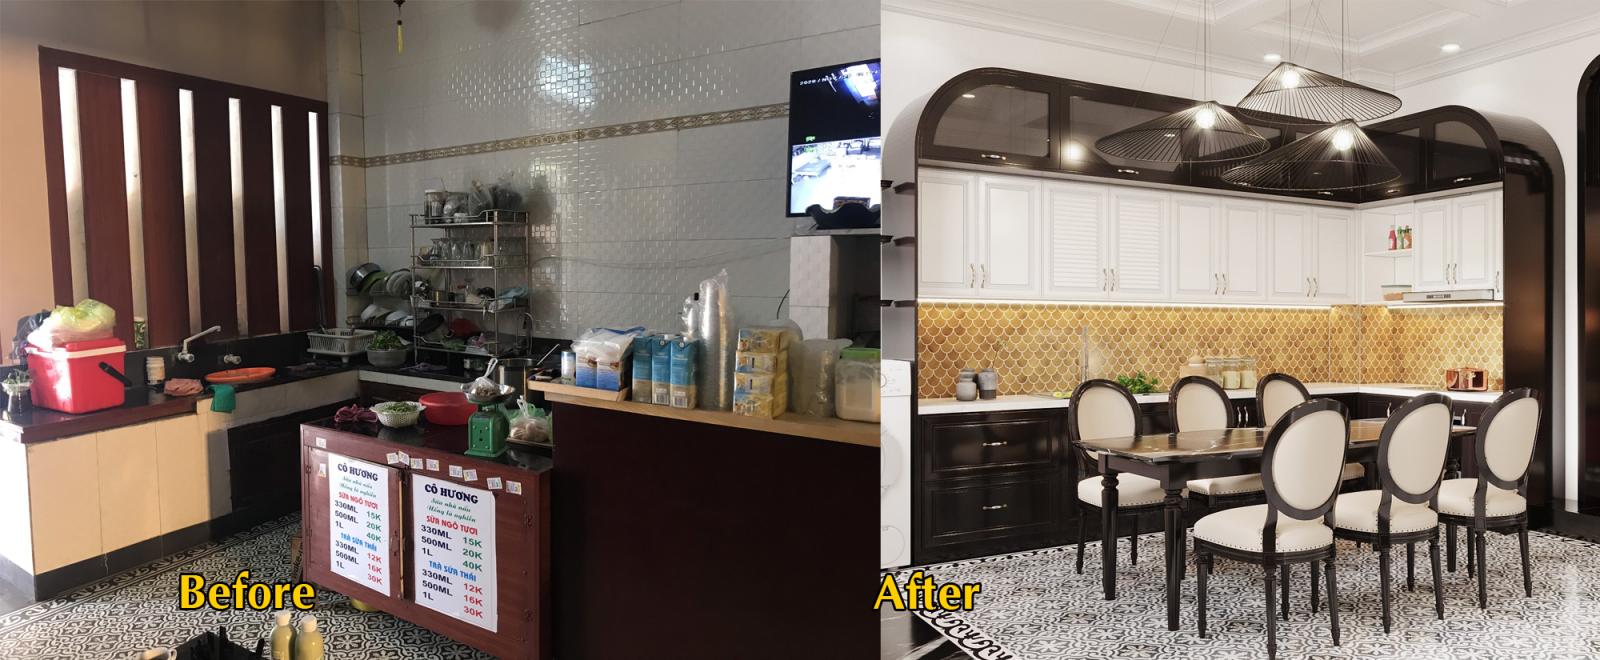 Hình ảnh phòng bếp - ăn trước và sau cải tạo